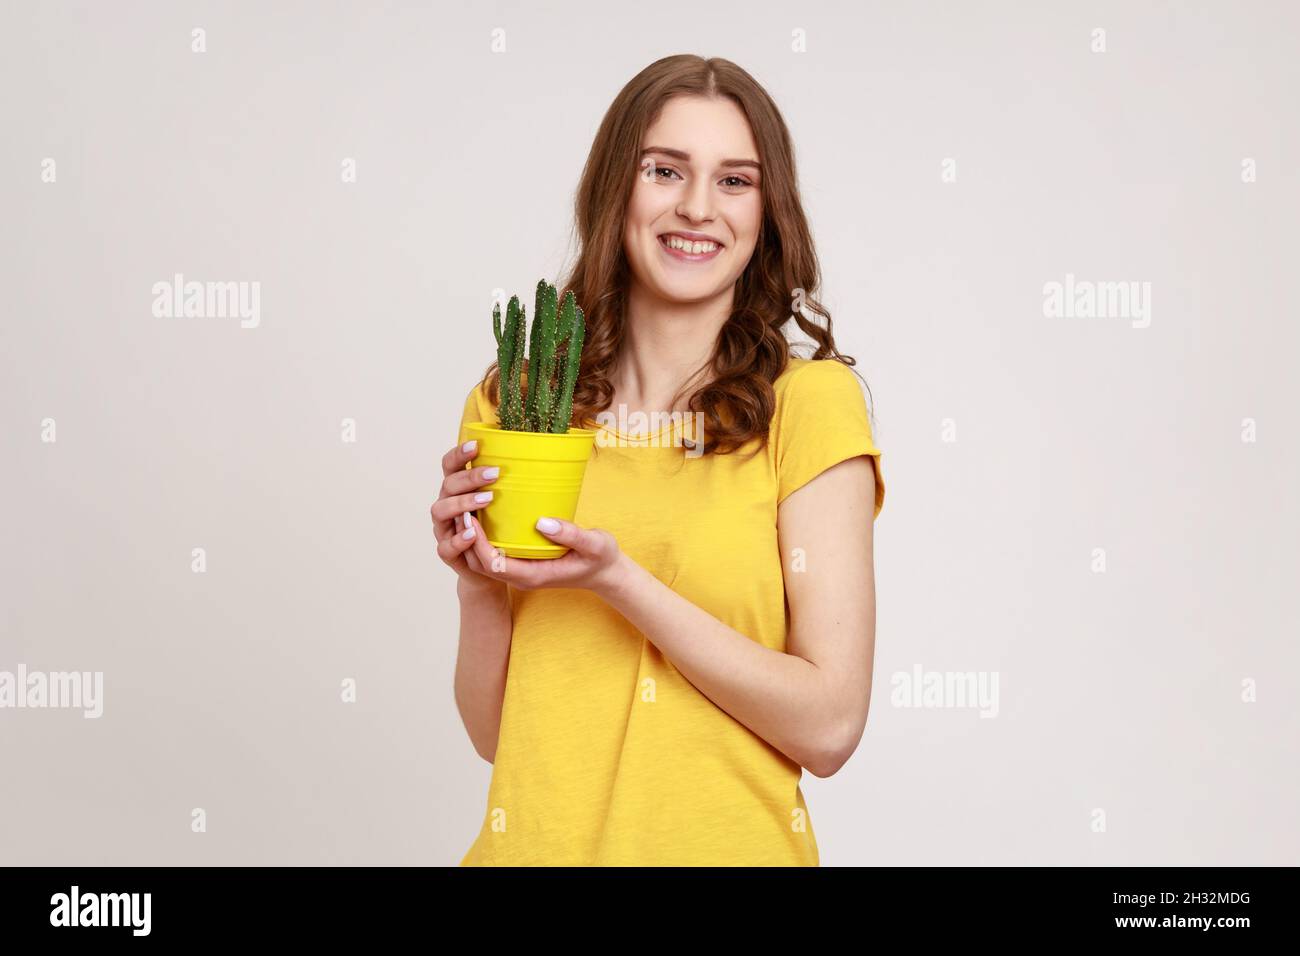 Cura per la pianta in vaso. Ritratto di giovane donna in T-shirt gialla con vaso di fiori e cactus, guardando la macchina fotografica con un sorriso toothy. Studio interno girato isolato su sfondo grigio. Foto Stock